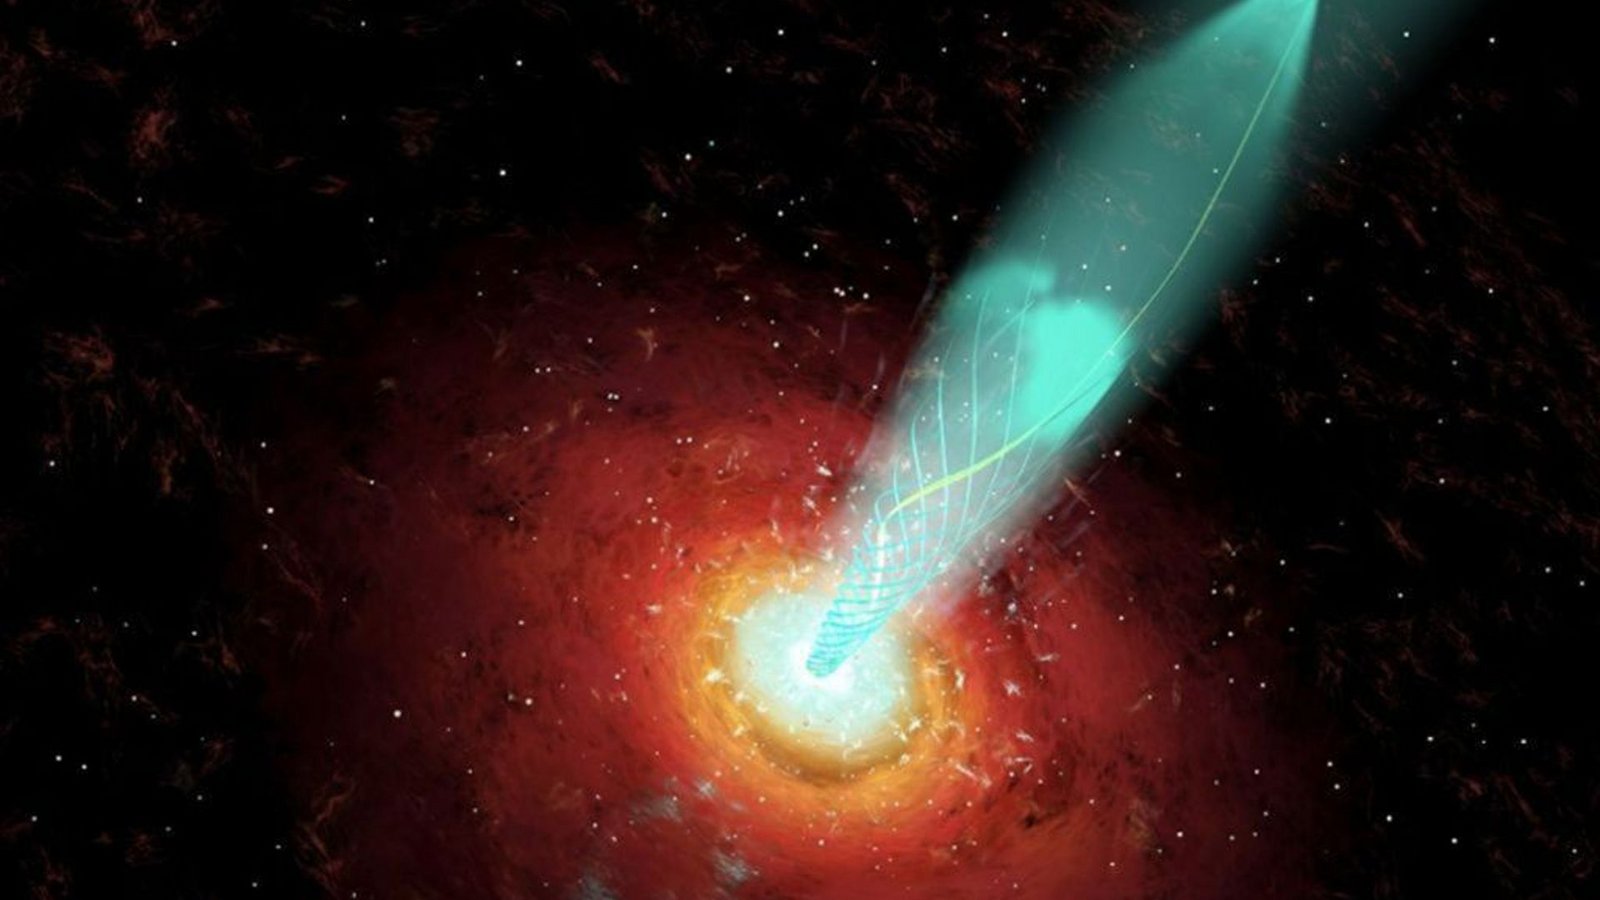 Die Computergrafik zeigt ein Schwarzes Loch, das Gas ins Weltall schleudert und dabei eine spiralförmige Spur hinterlässt.Foto: (Nasa/dpa